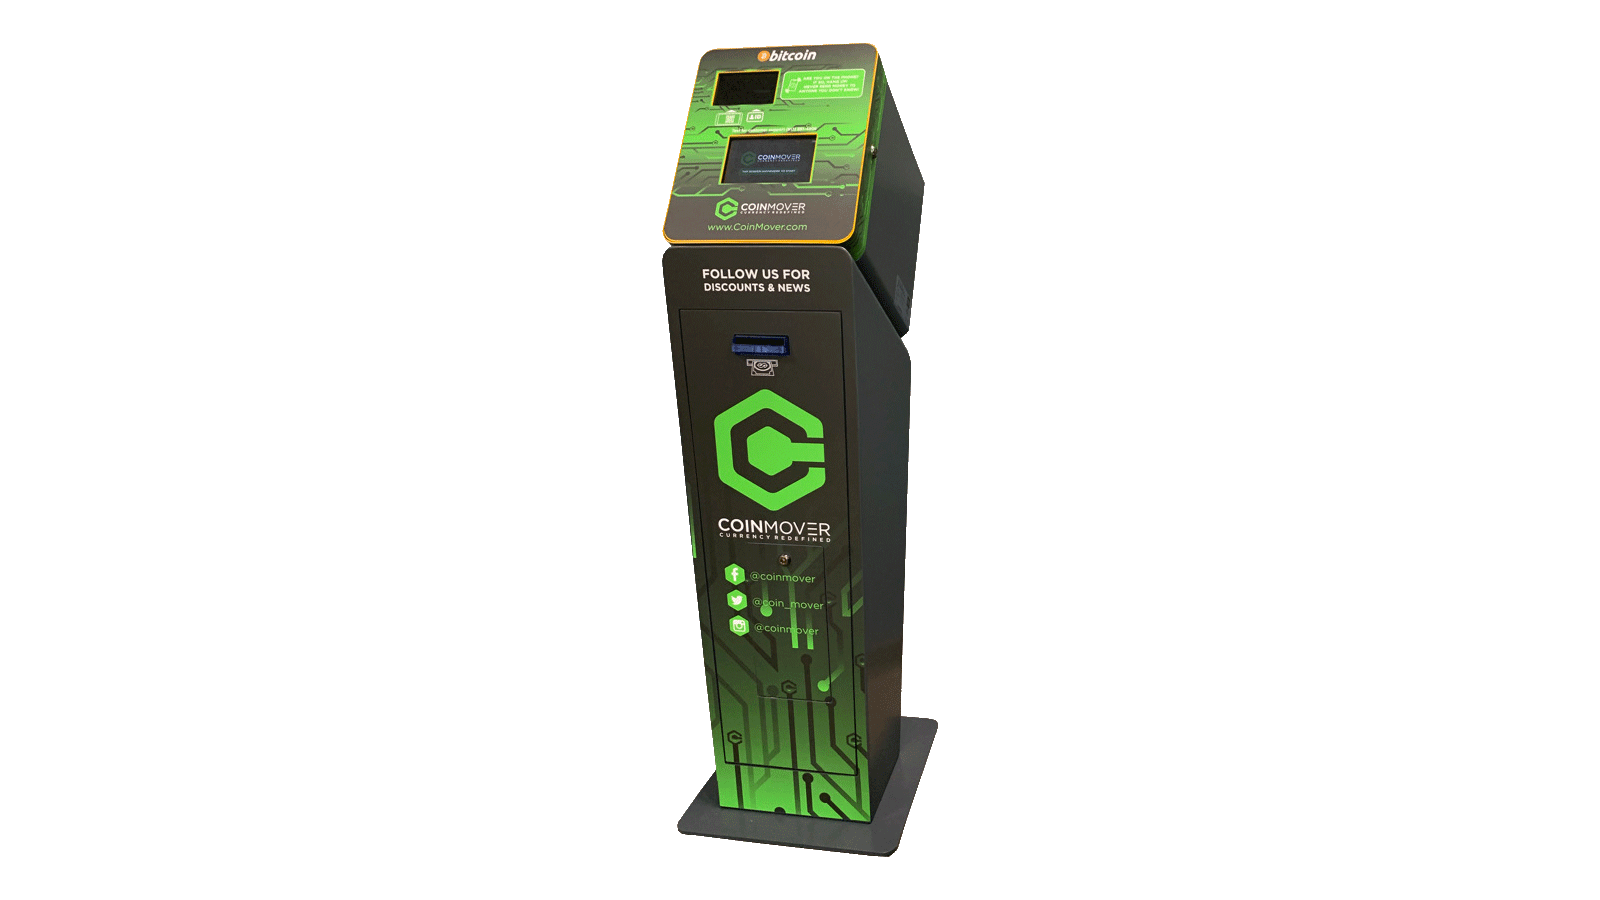 CoinMover Bitcoin ATM Machine